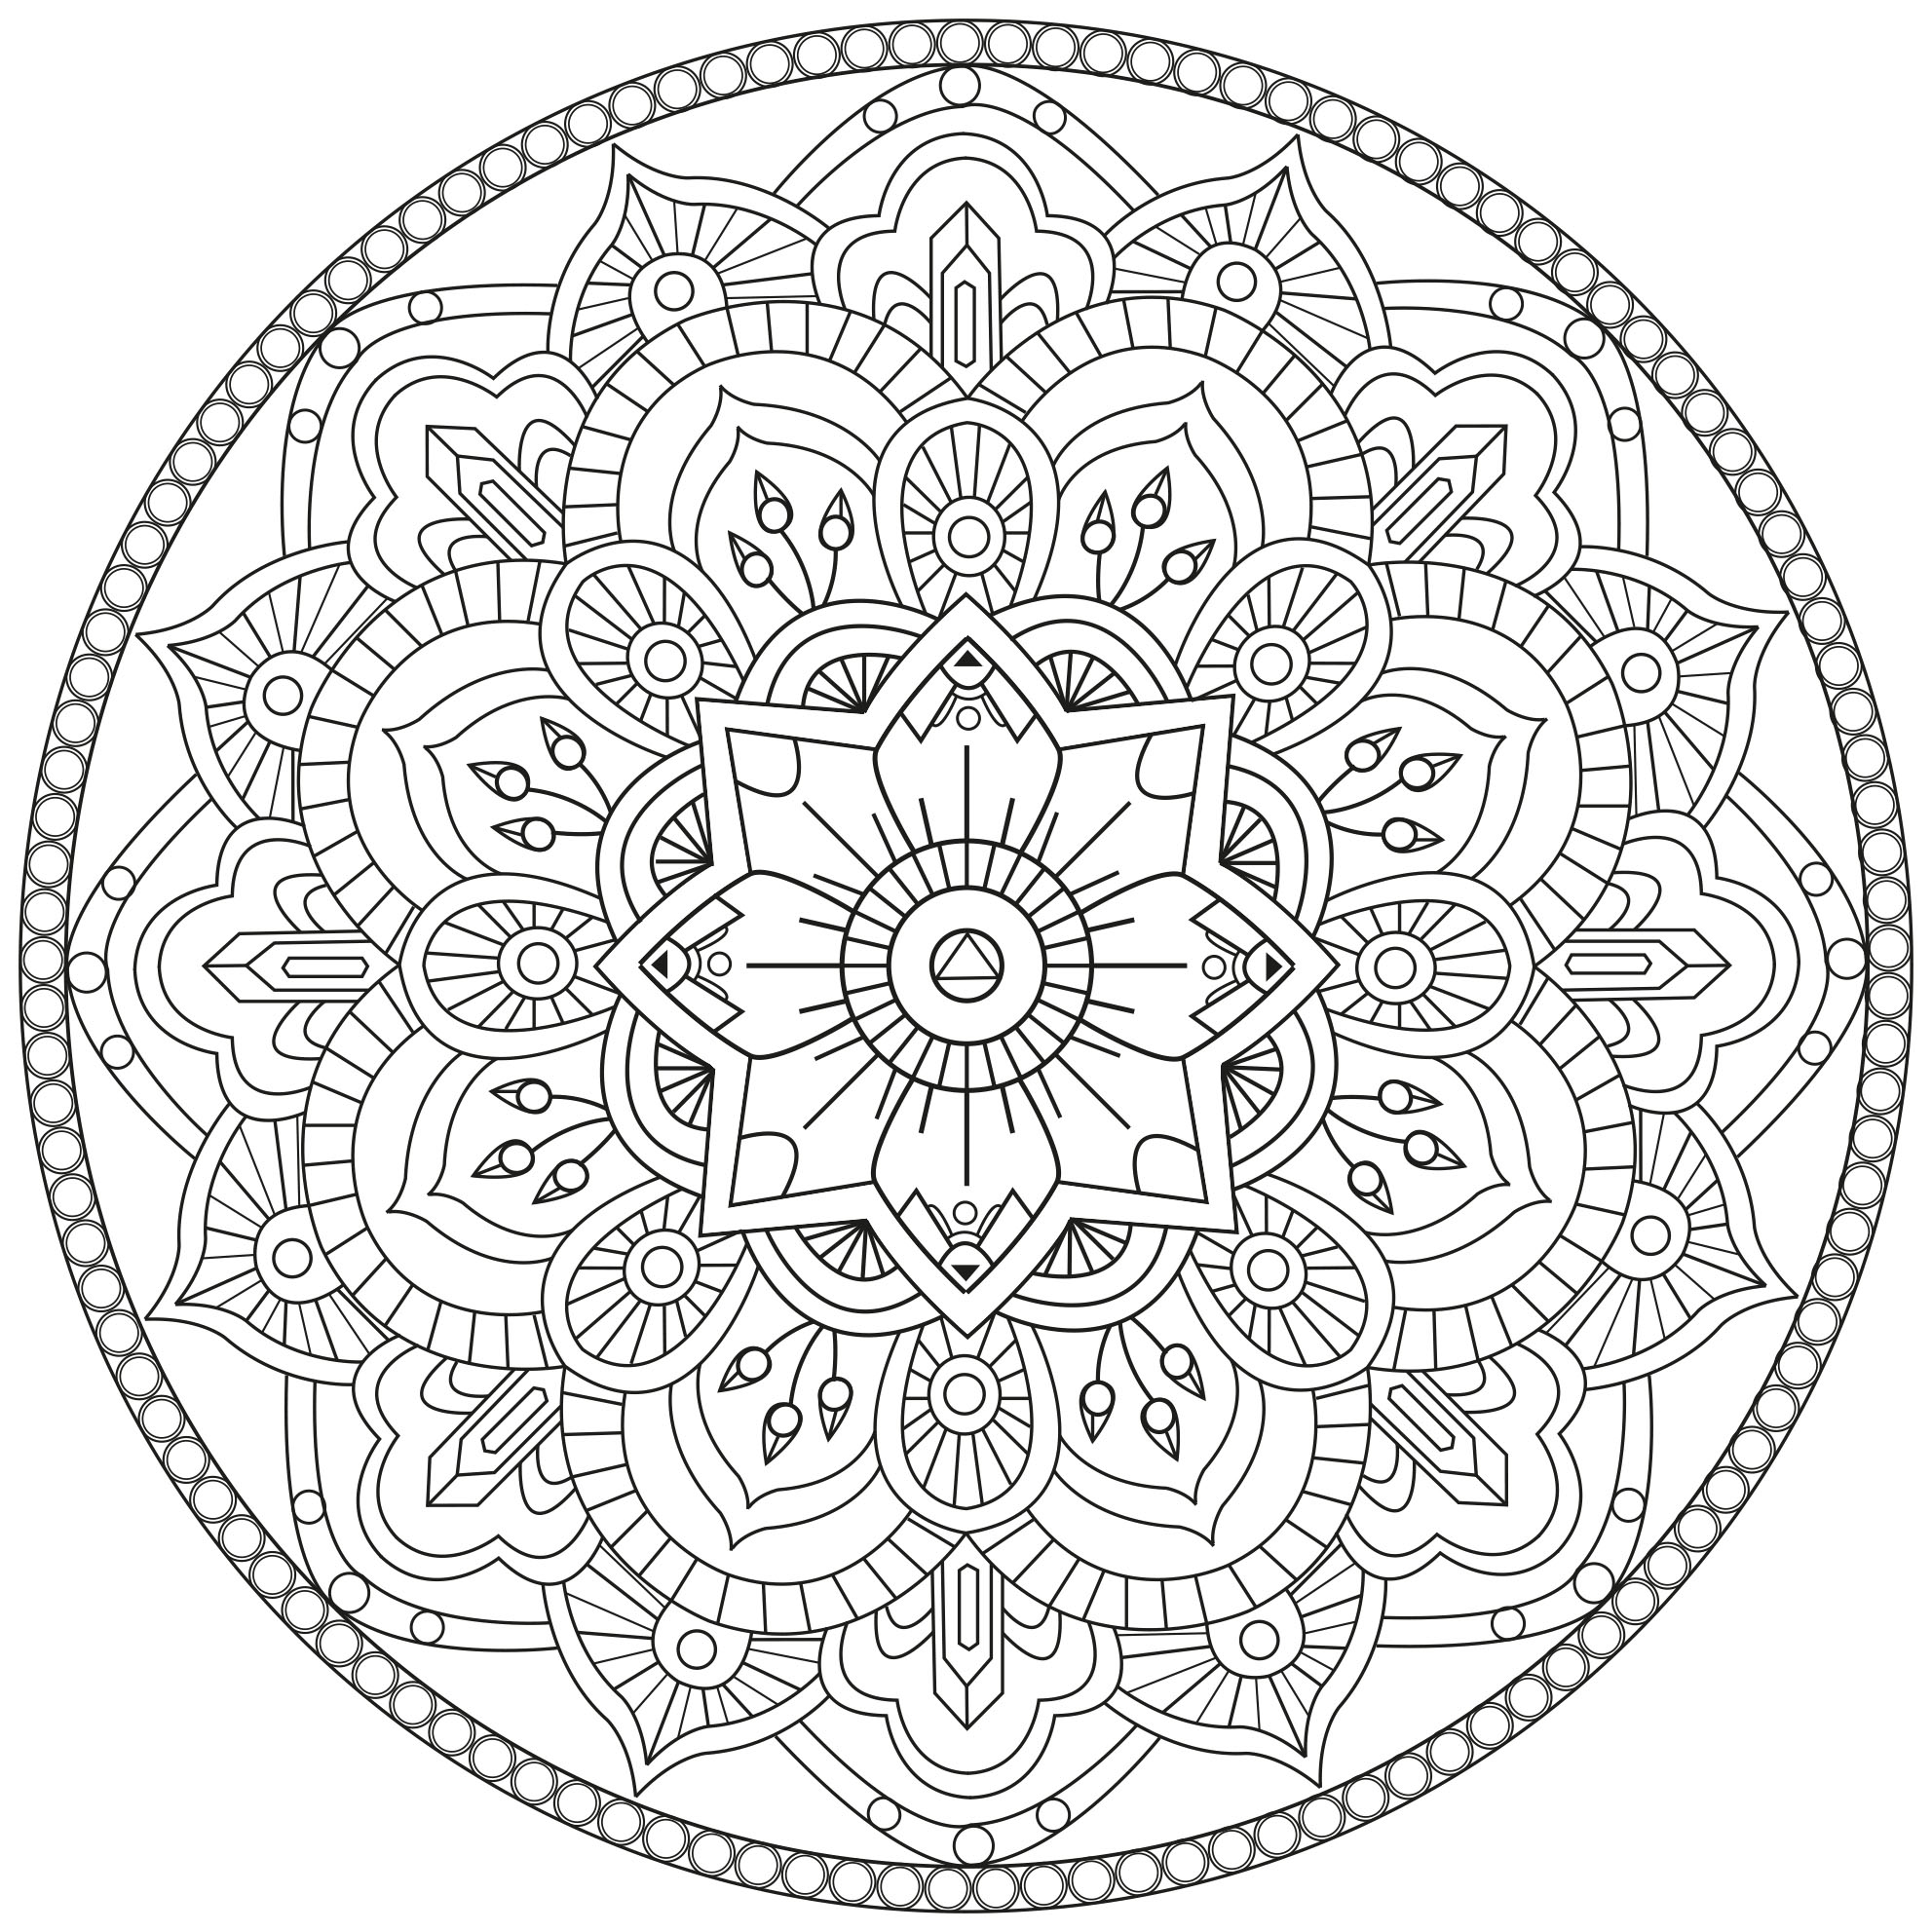 Tanti piccoli dettagli e aree piuttosto ridotte, per un Mandala 'a linee regolari' molto originale e armonioso.